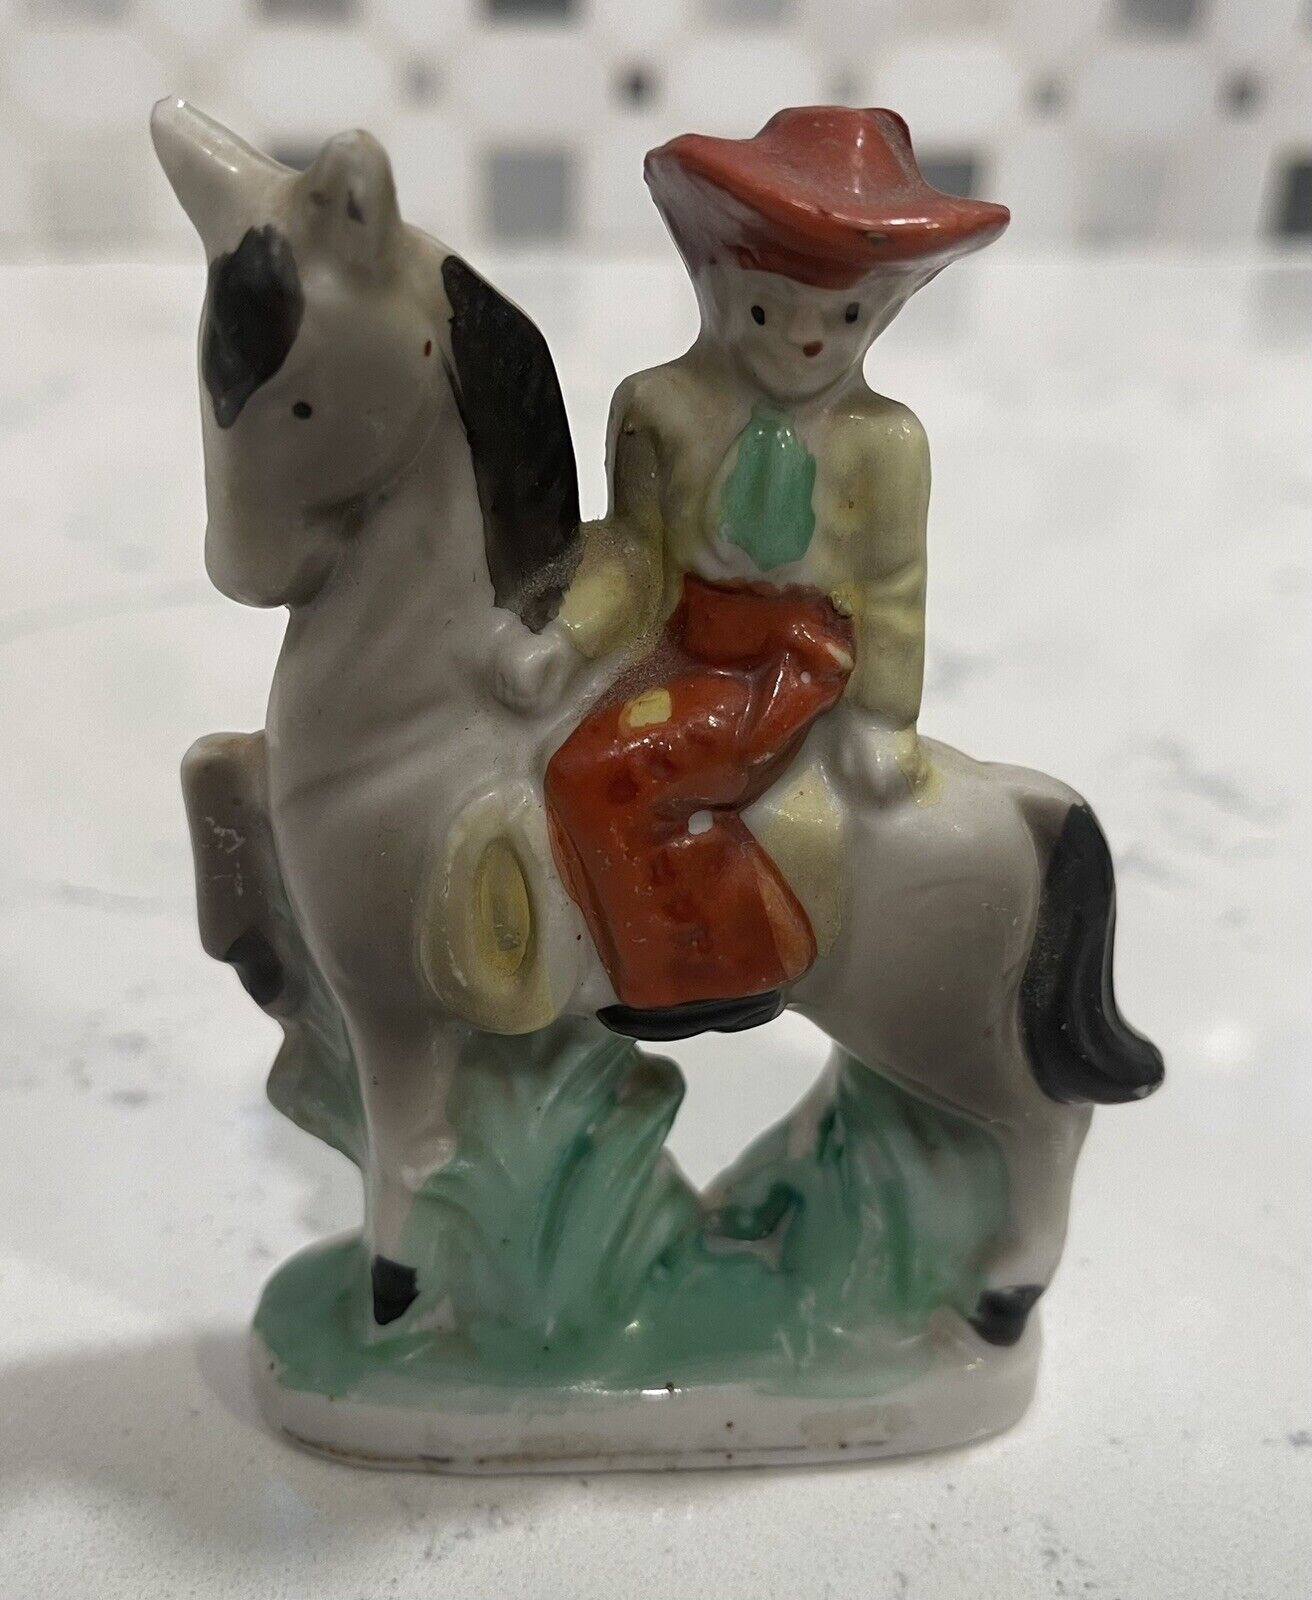 Vintage Cowboy on Horse Ceramic/Porcelain Figurine JAPAN embossed on bottom back